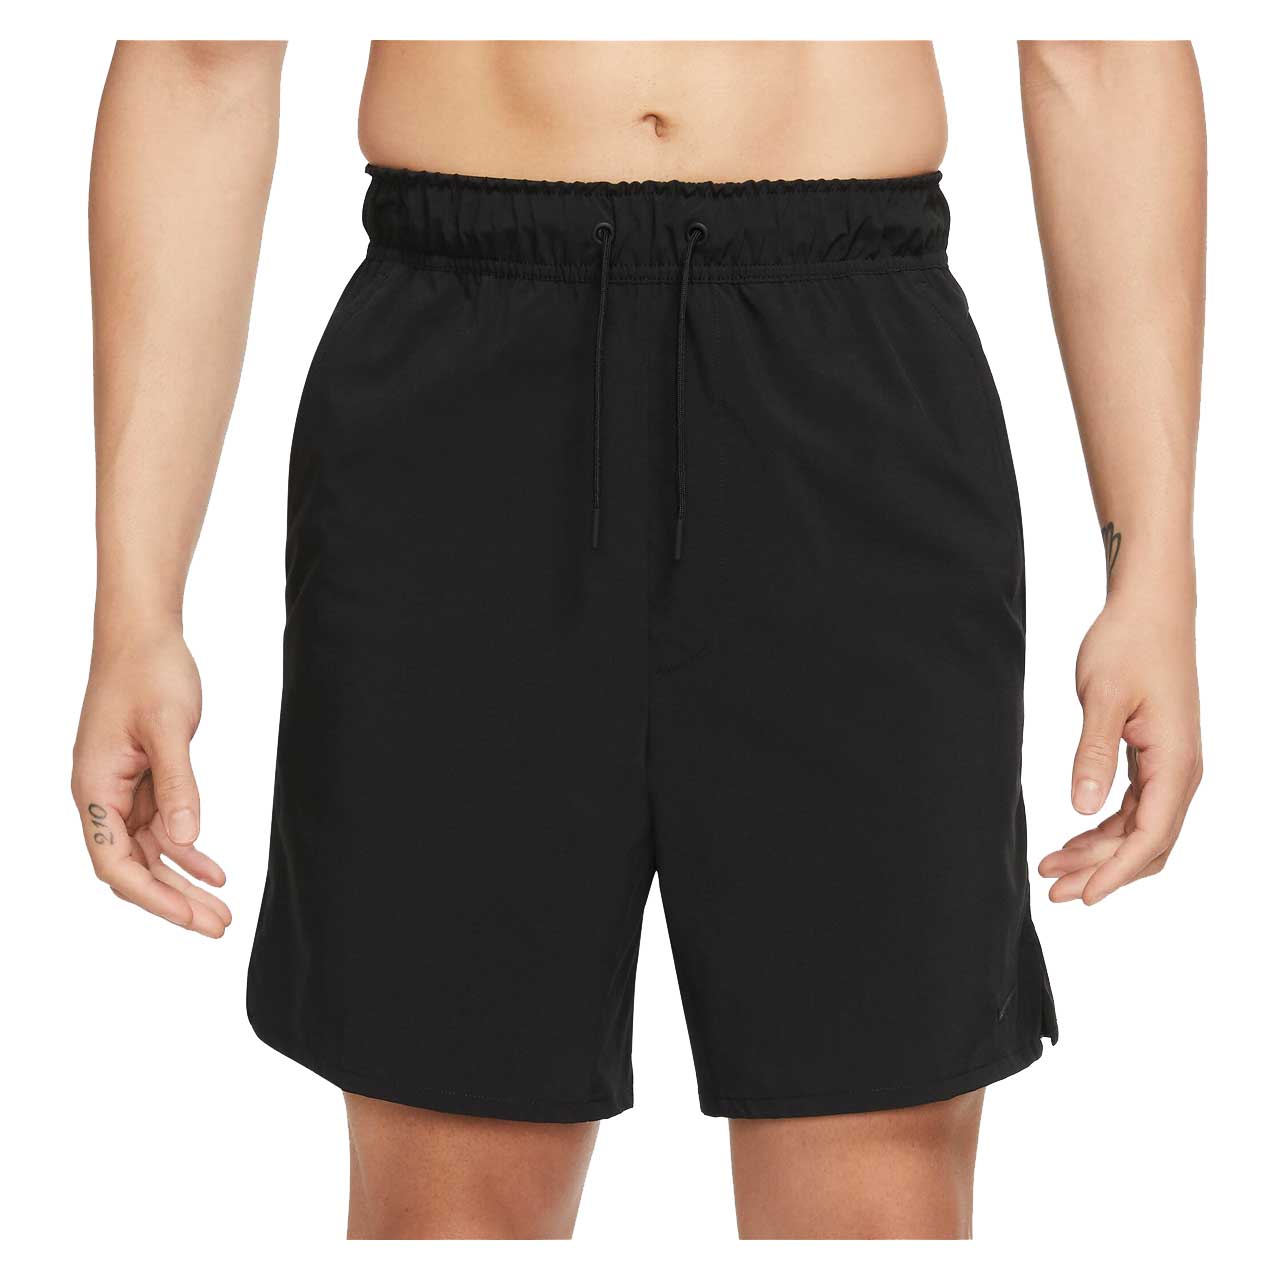 Herren Fitness Shorts